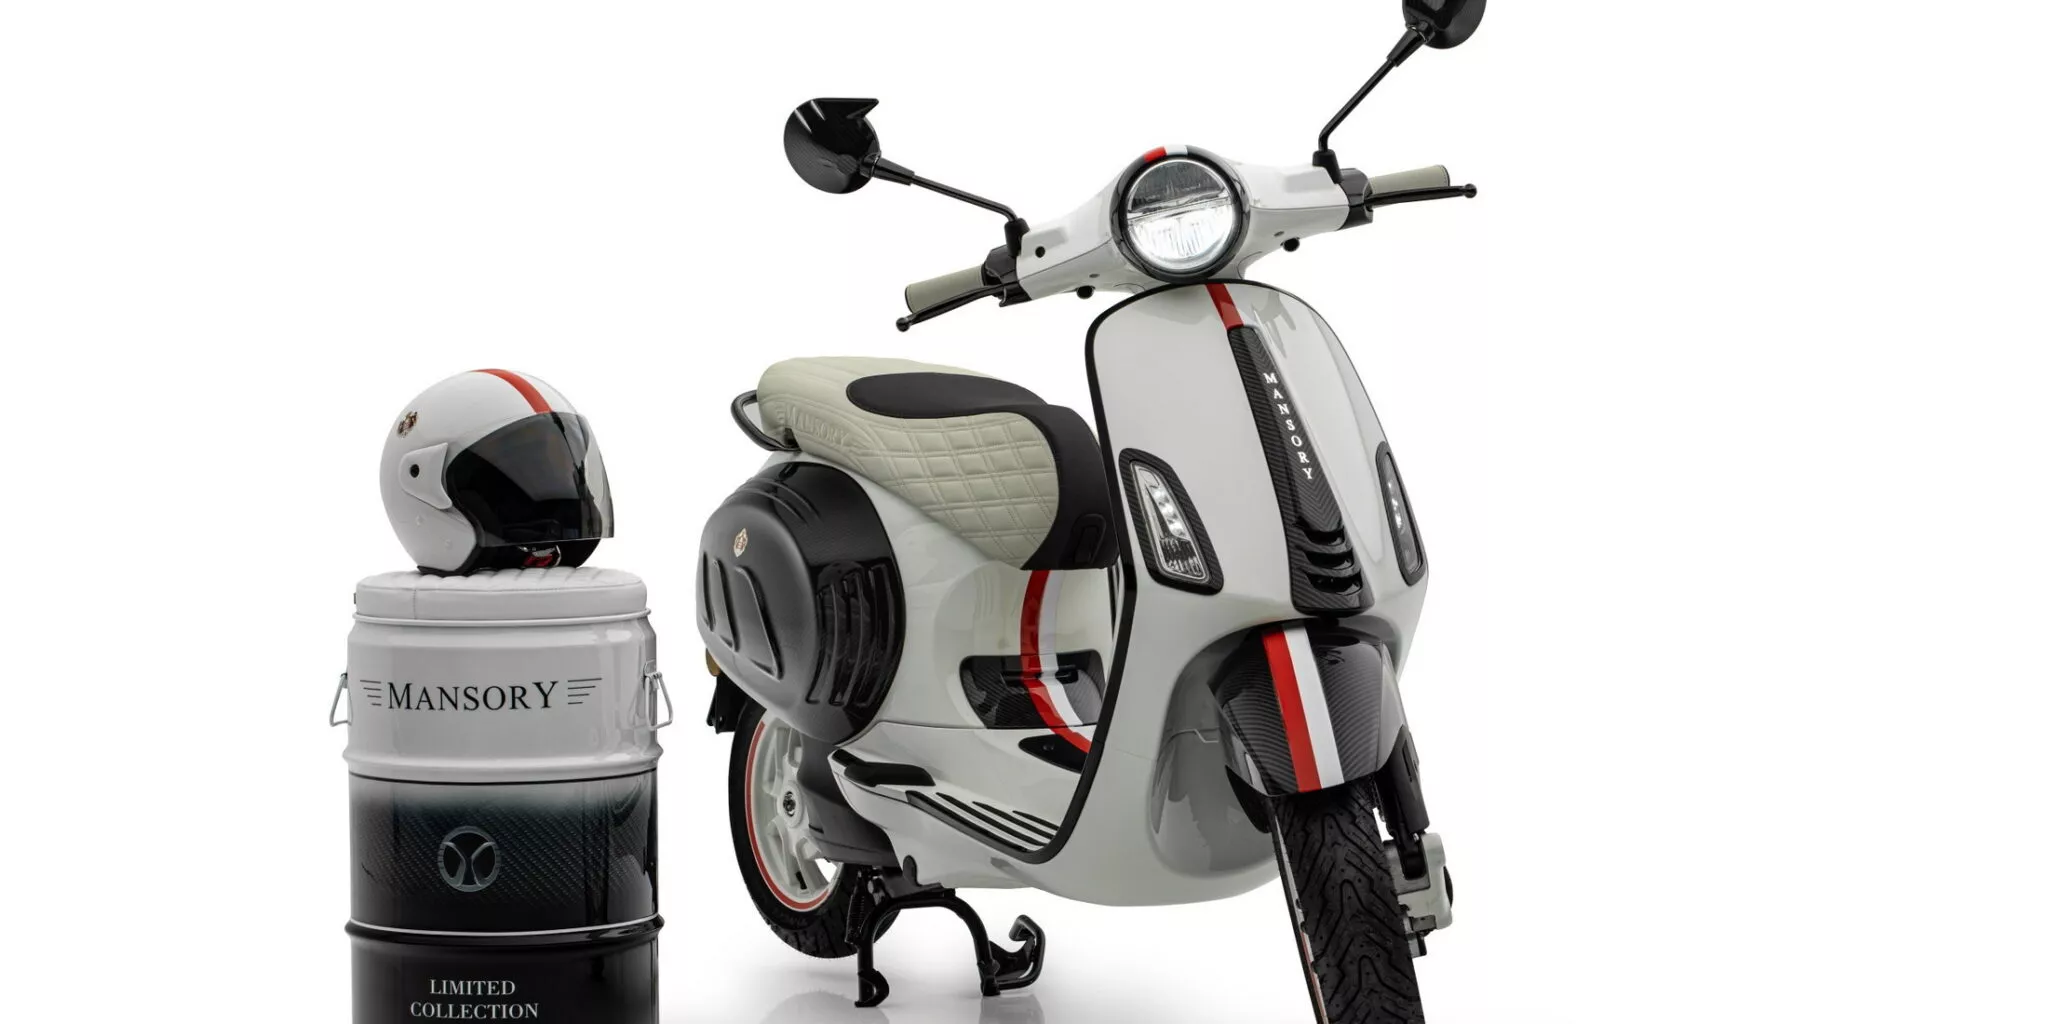 Электрический скутер Vespa Vespa получил обновленную версию Mansory